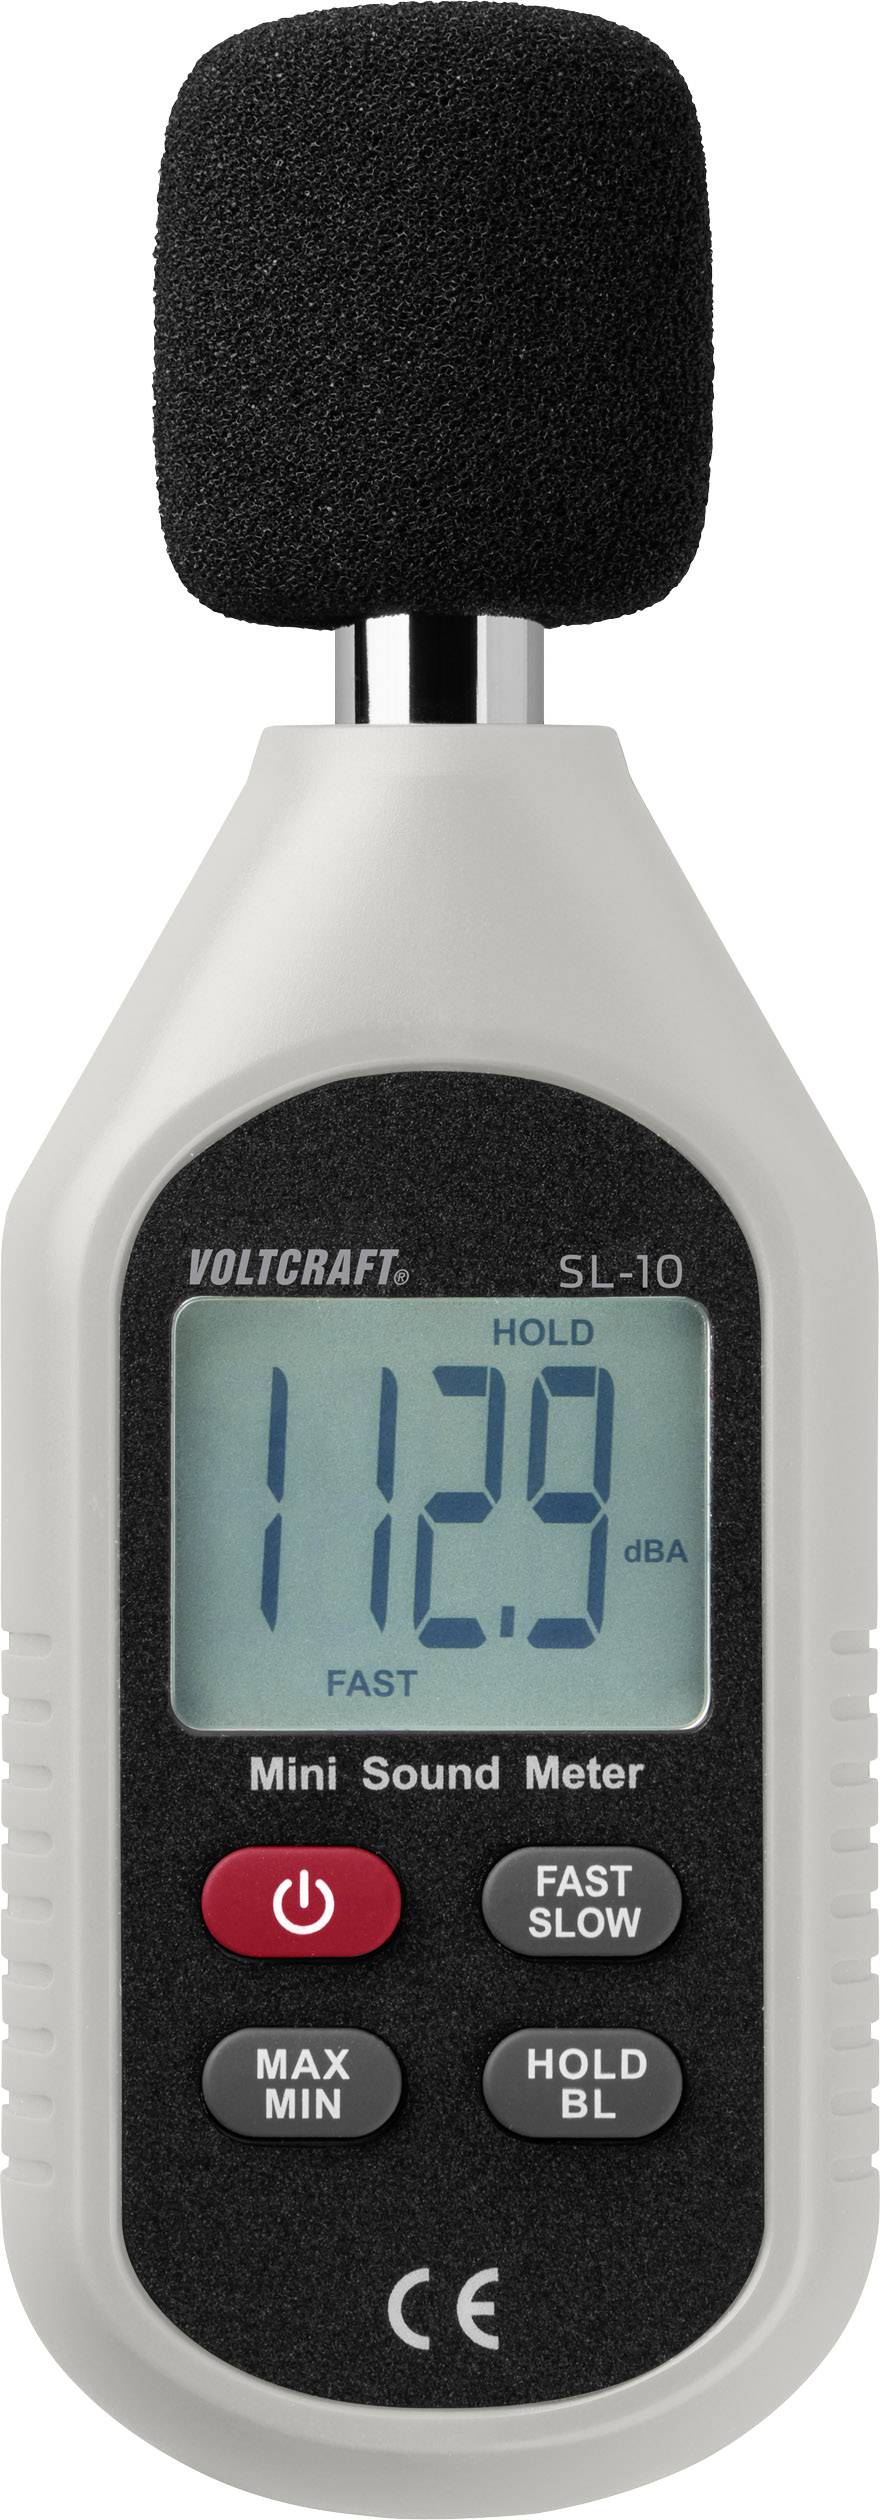 VOLTCRAFT Schallpegel-Messgerät SL-10